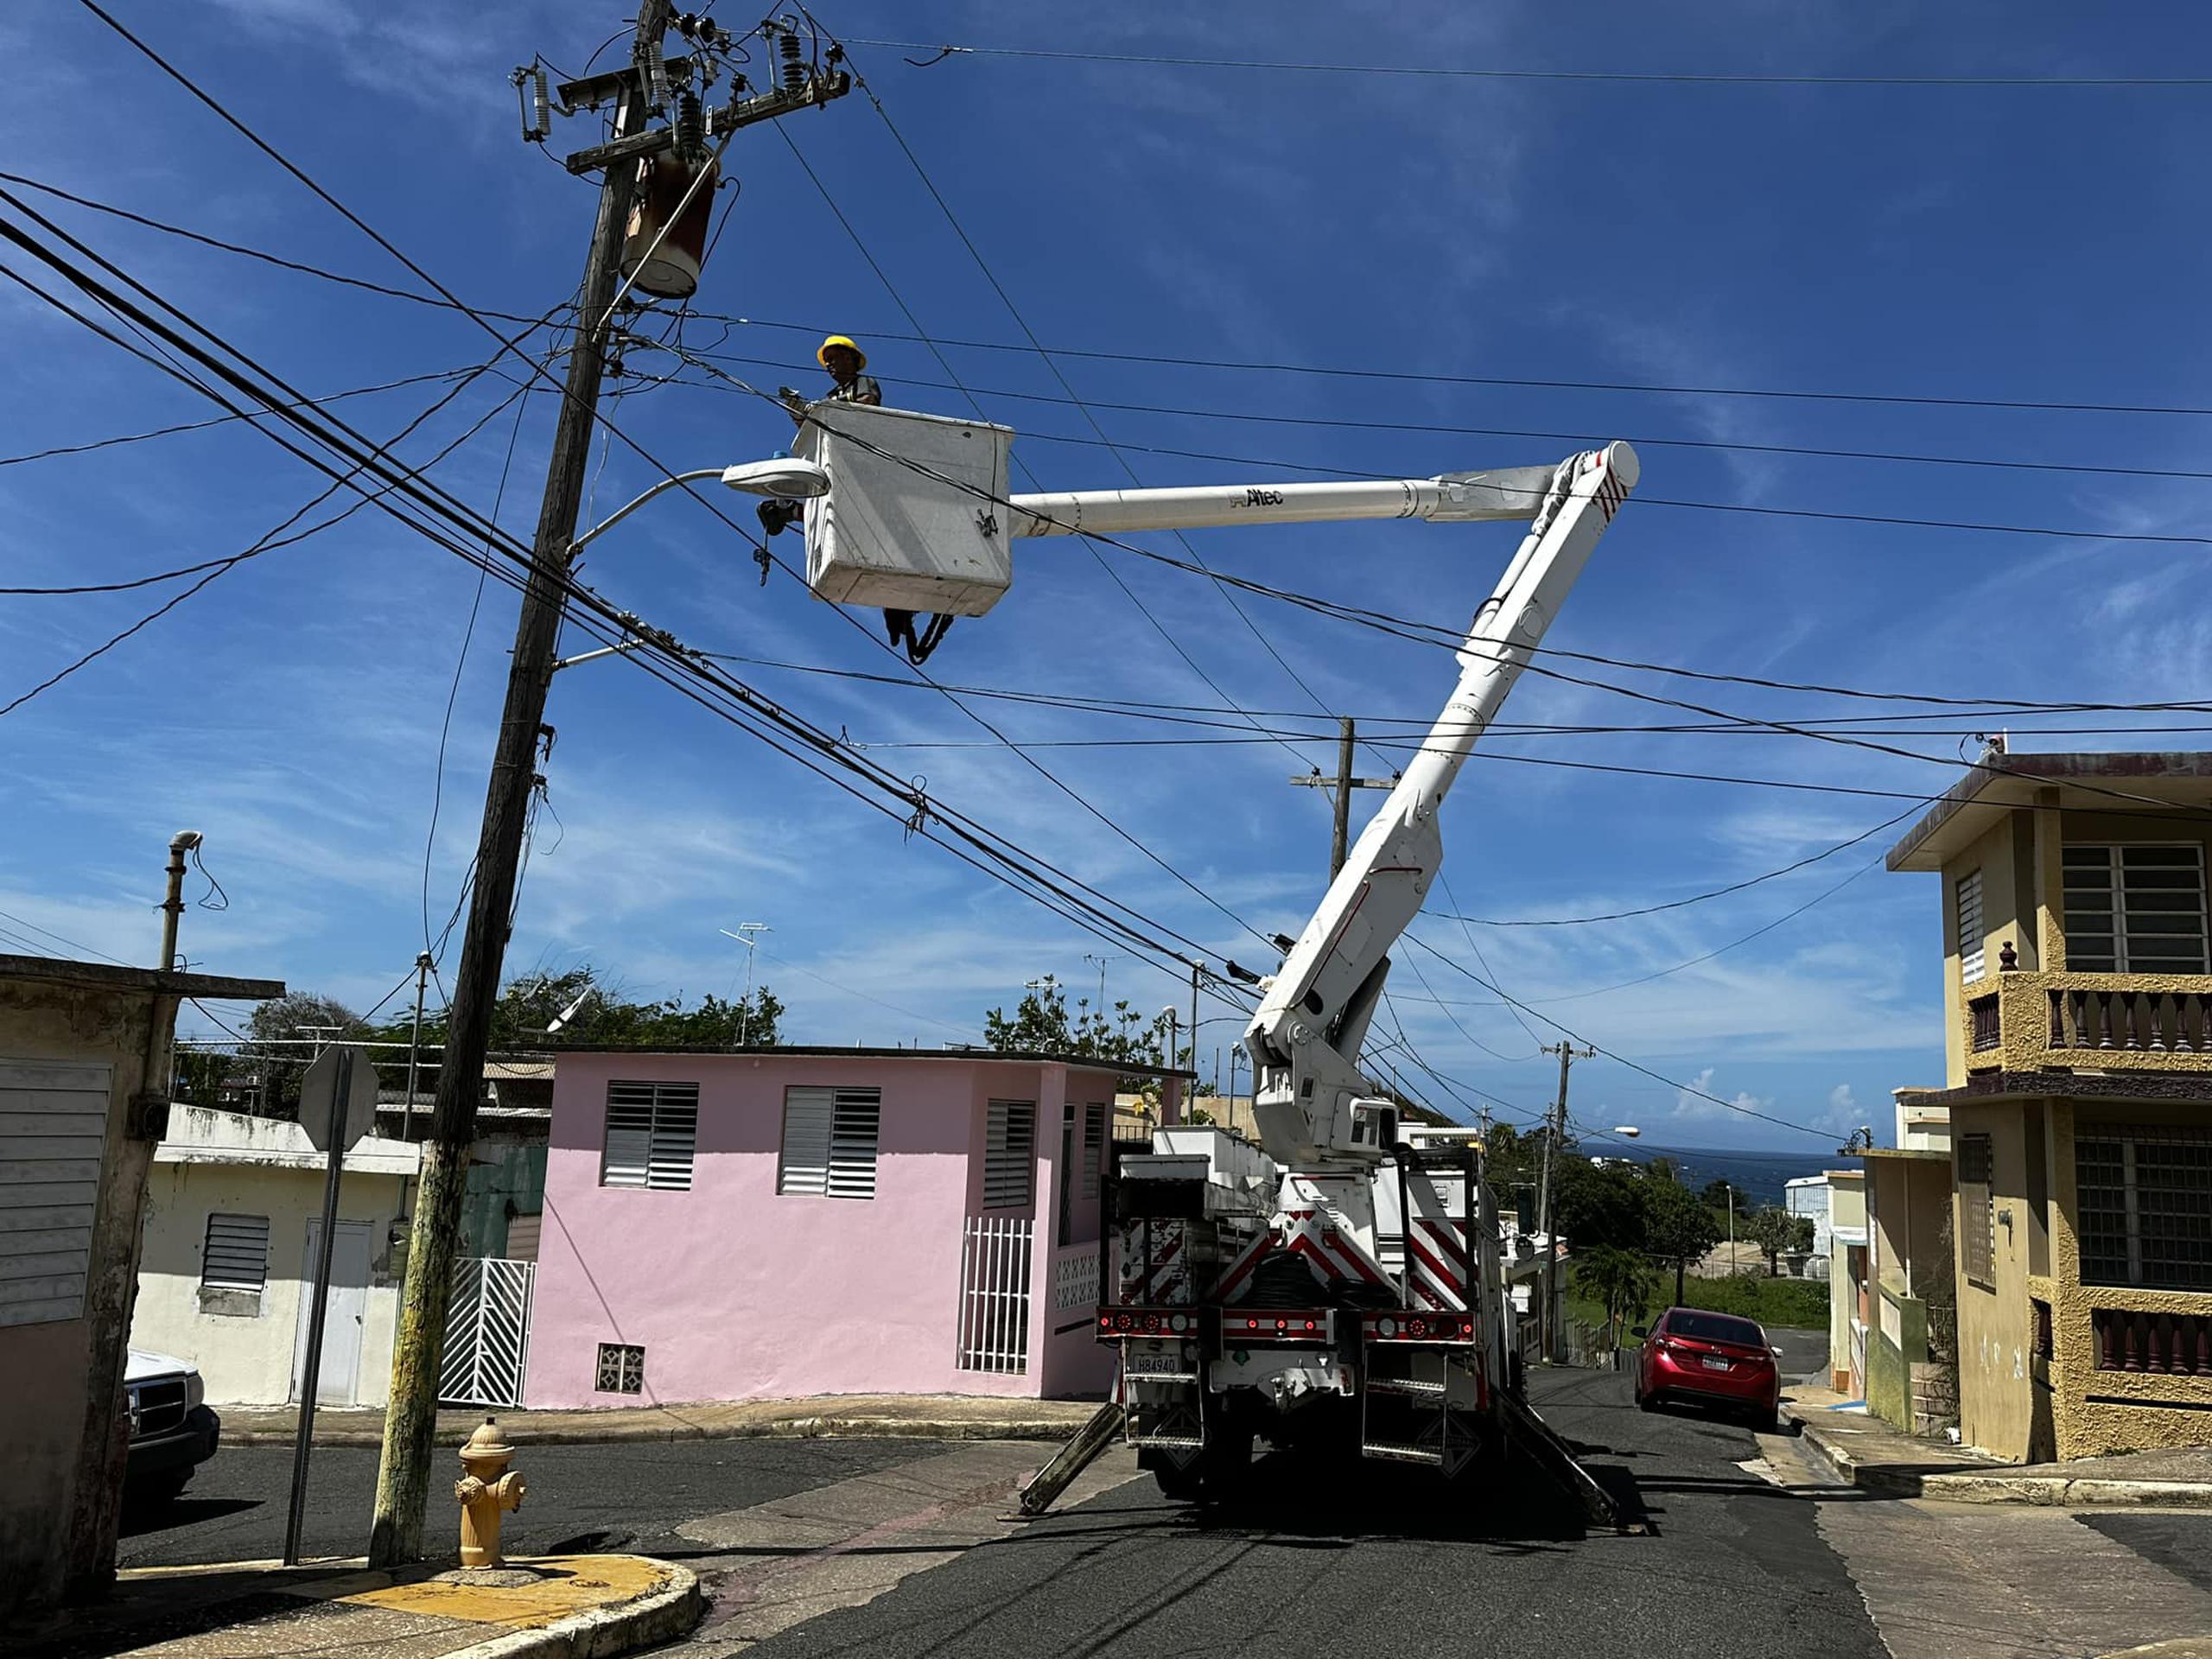 Varios municipios han decido activar sus propias brigadas para hacer trabajos de reparación al sistema eléctrico y devolver el servicio a sus ciudadanos.